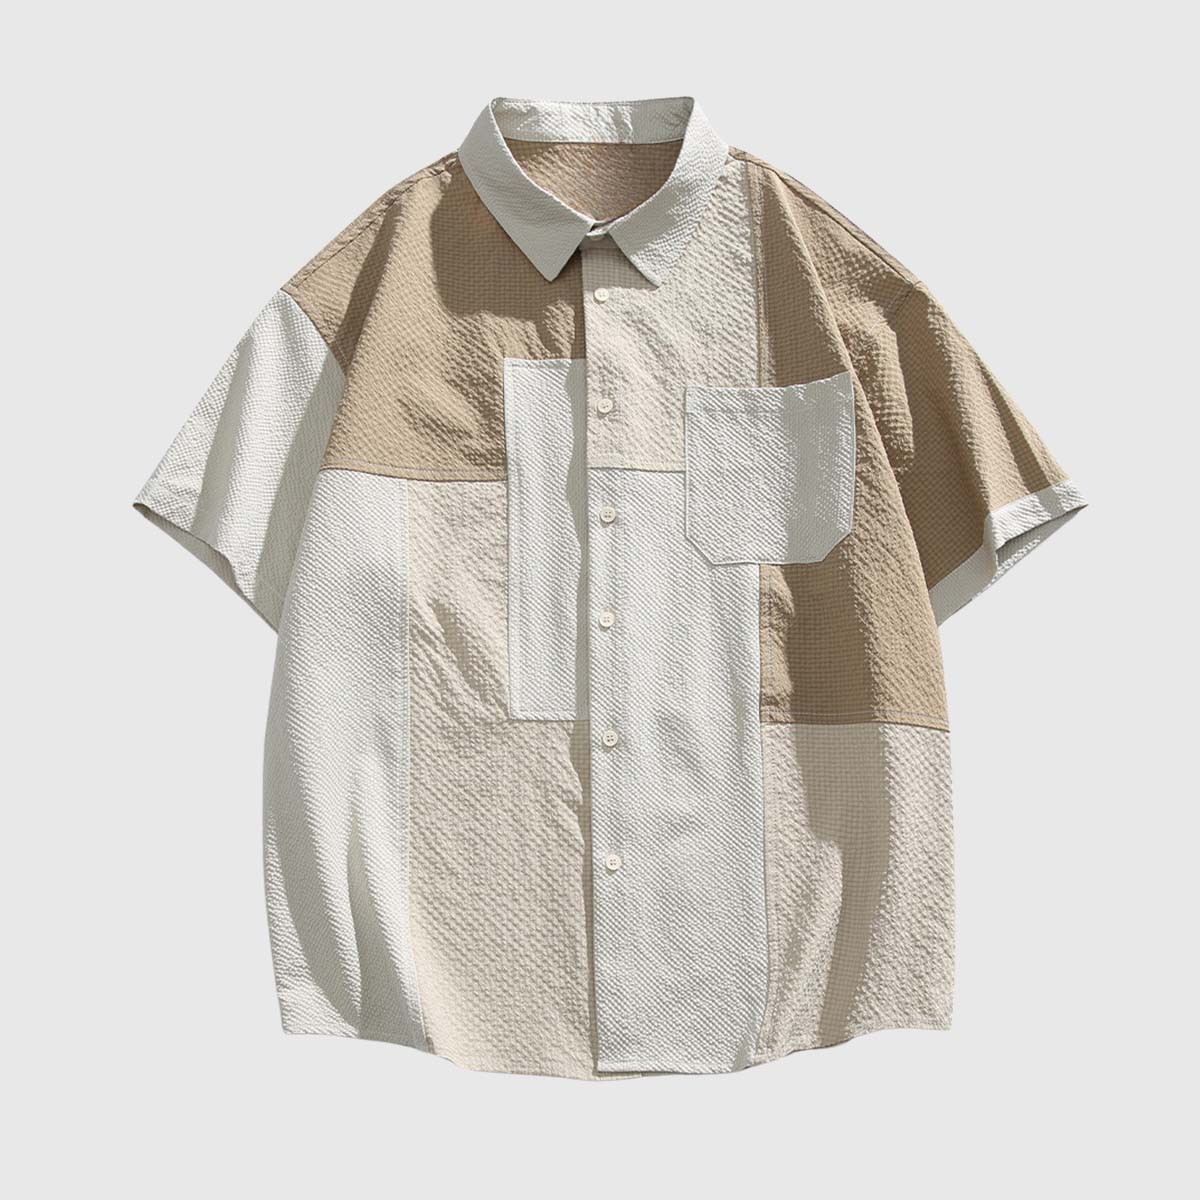 Textured Neutral Tone Shirt